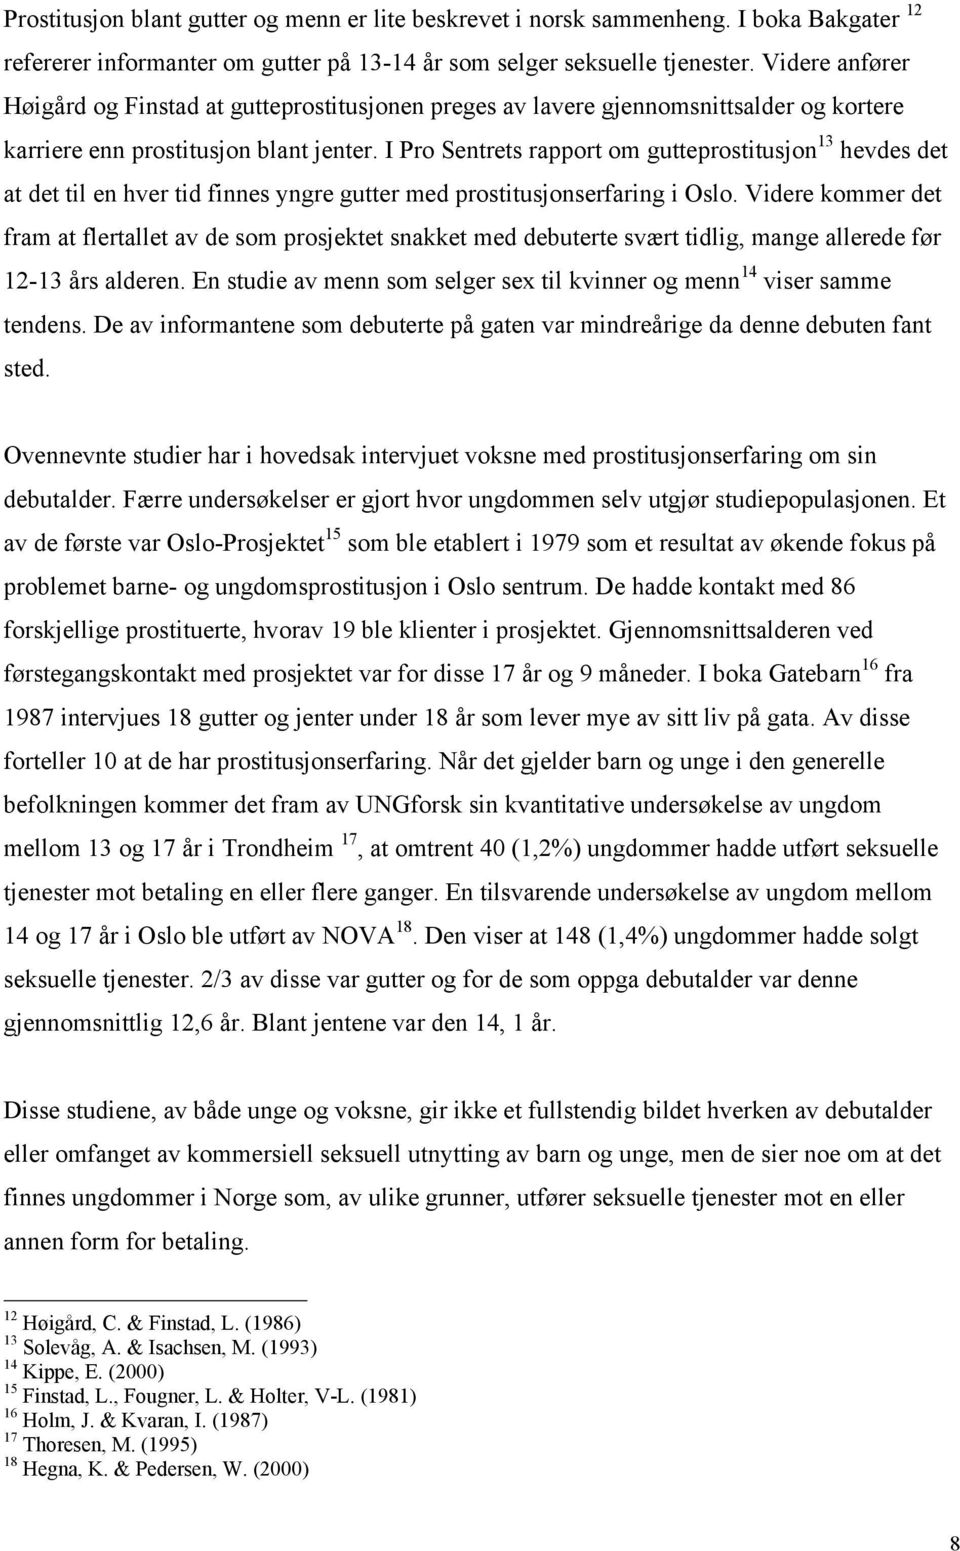 I Pro Sentrets rapport om gutteprostitusjon 13 hevdes det at det til en hver tid finnes yngre gutter med prostitusjonserfaring i Oslo.